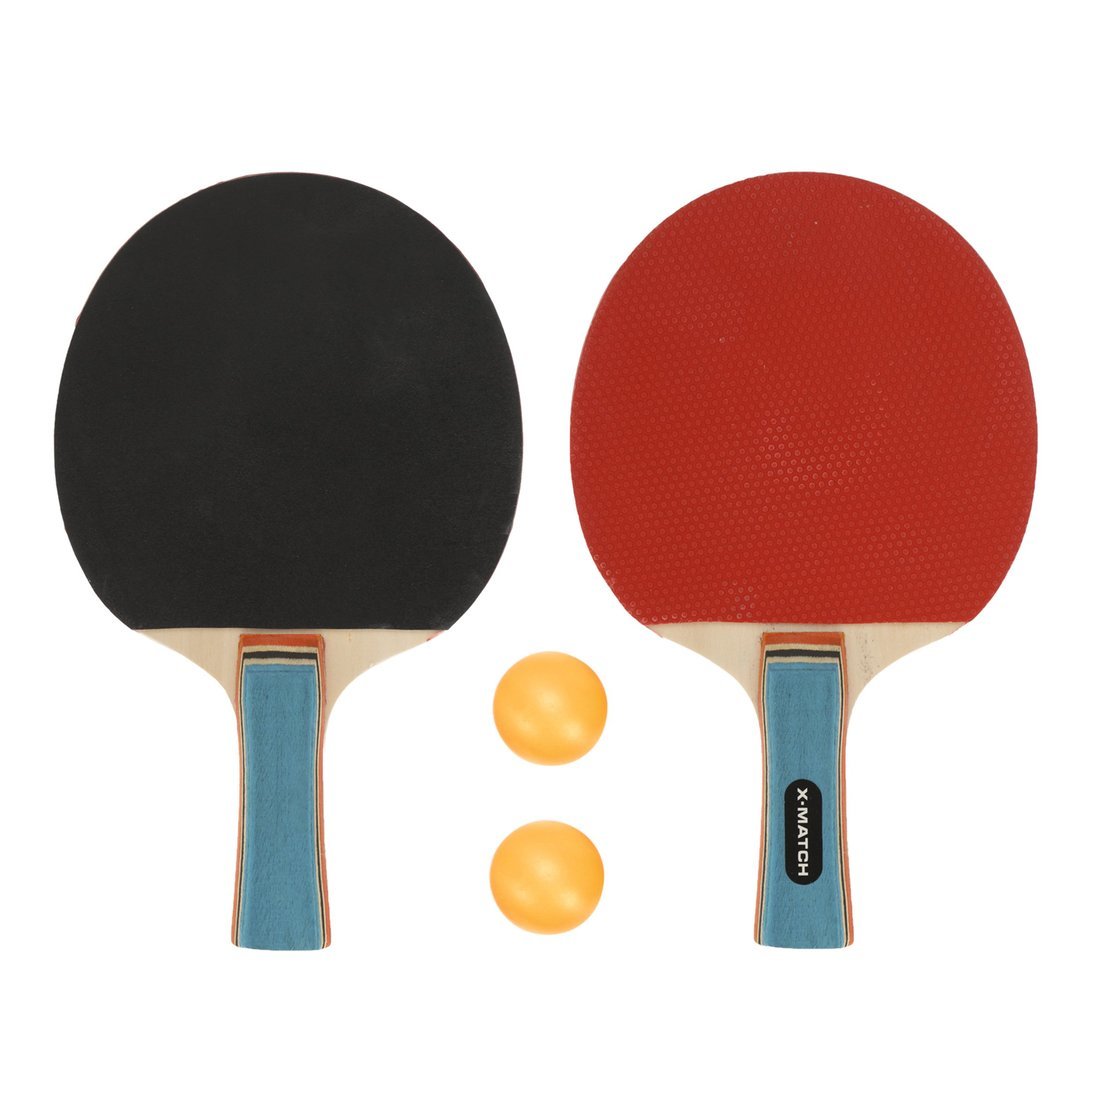 Набор для настольного тенниса X-Match (2 ракетки 8 мм., 2 шарика) 636271 ракетка для настольного тенниса atemi pro 1000 an